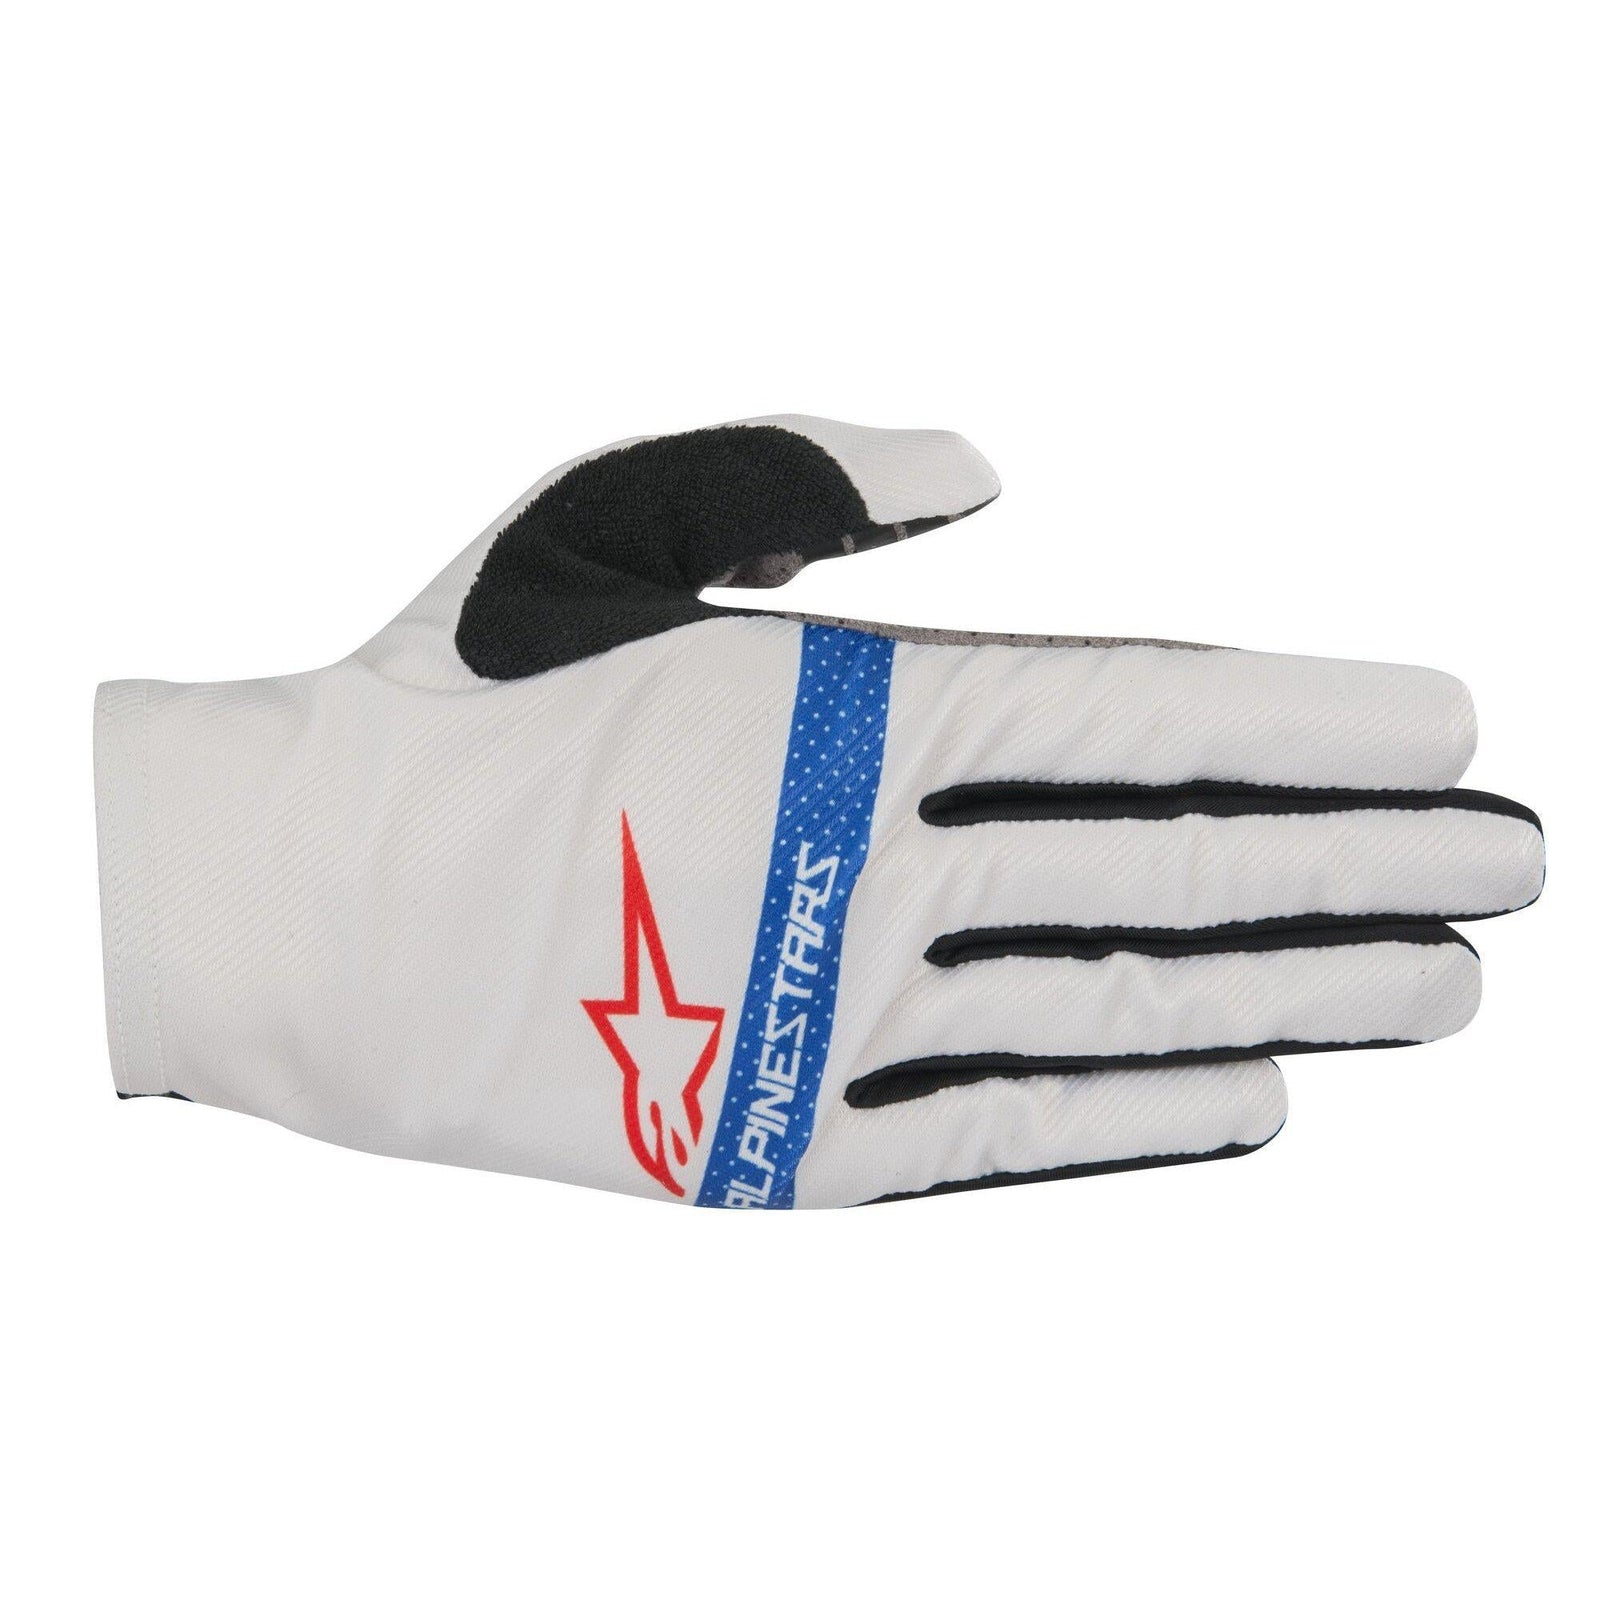 Alderex Pro Lite Gloves